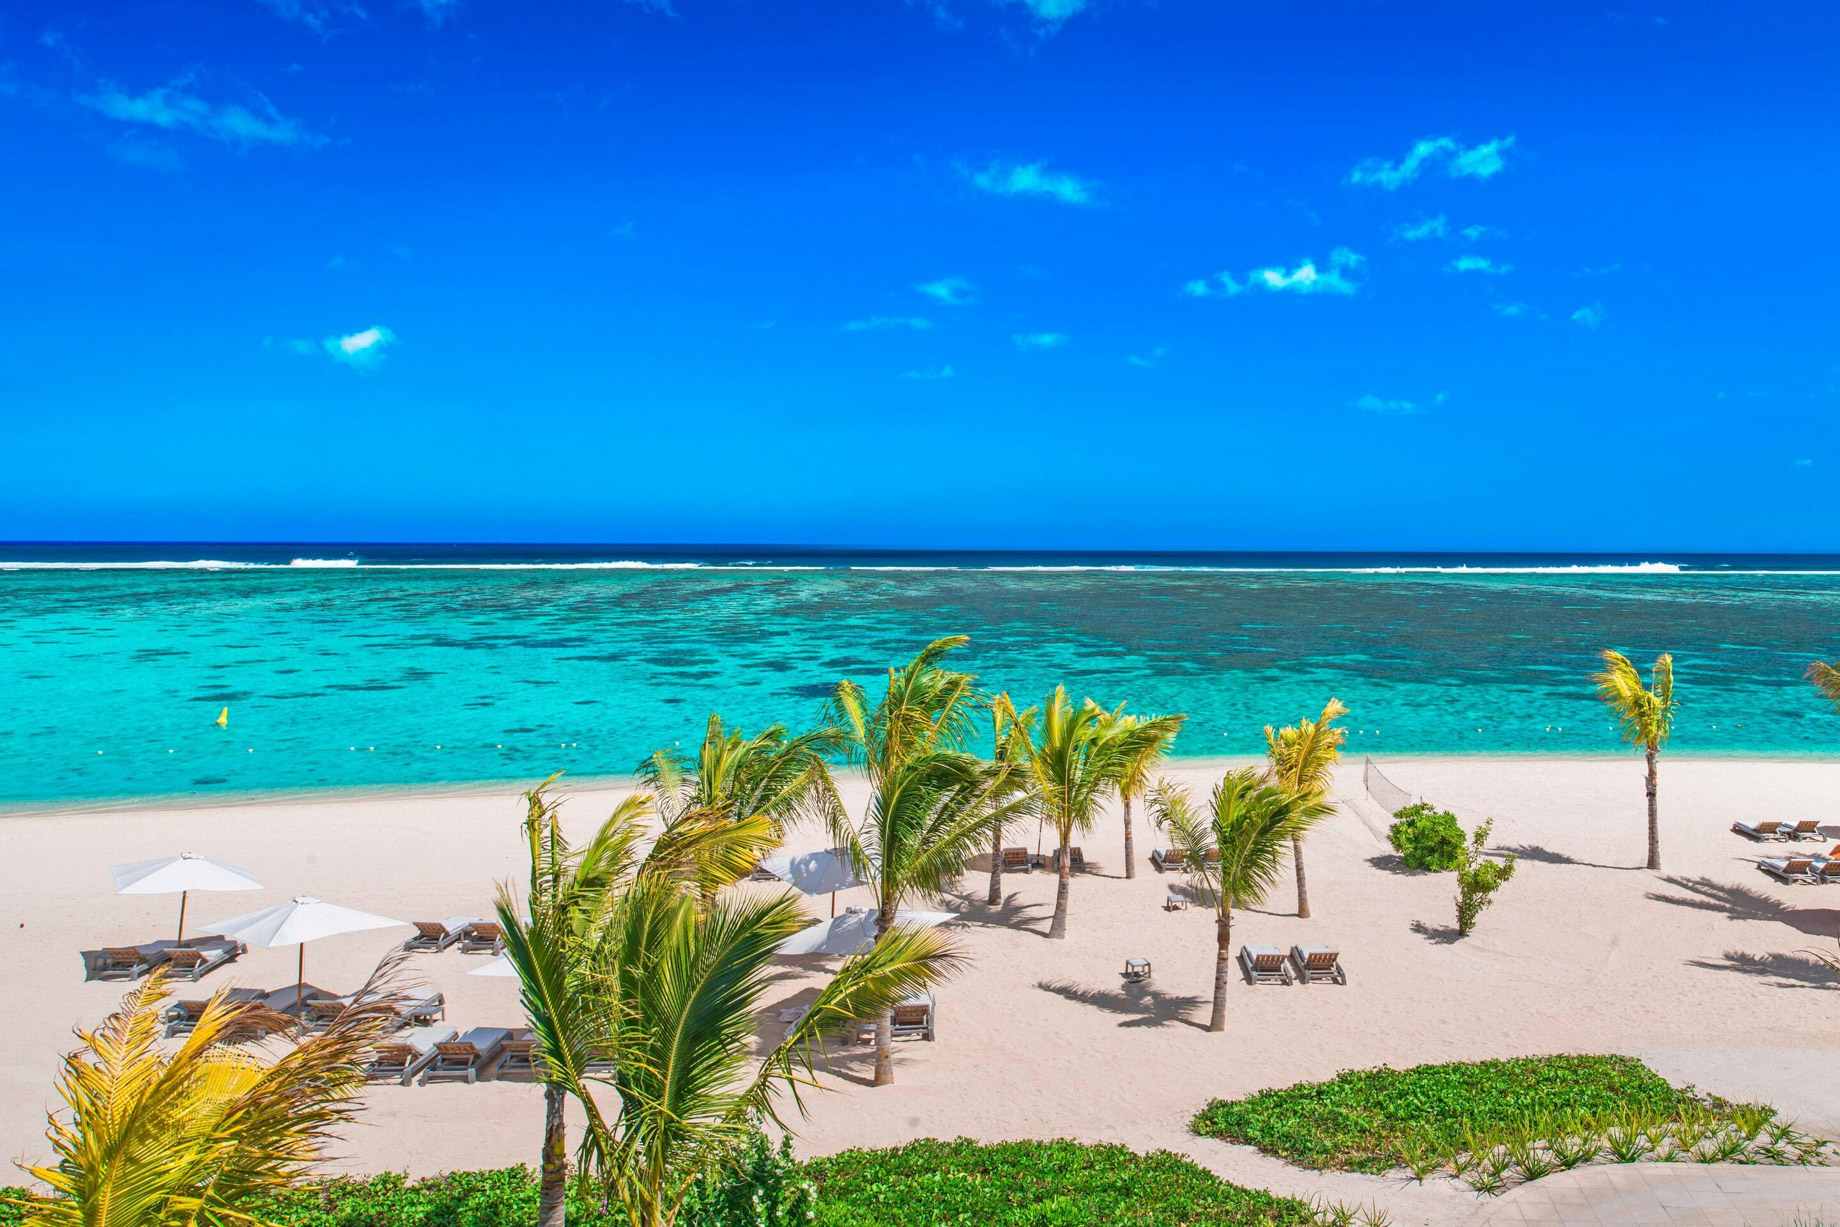 JW Marriott Mauritius Resort – Mauritius – The Resort Beach Aerial View